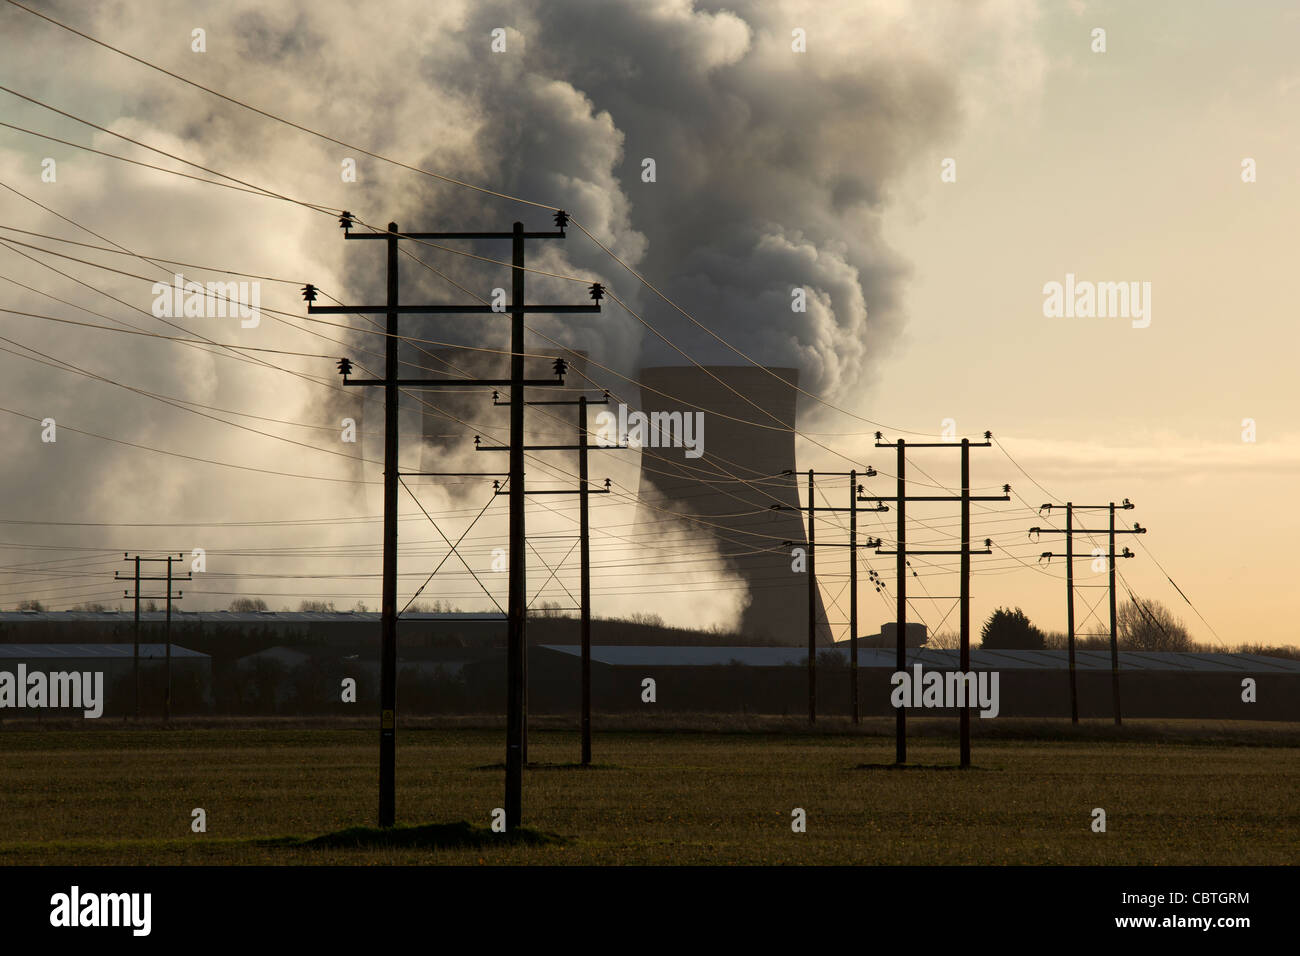 Rauch und Dampf steigt aus Kühltürmen eine Kohle gefeuert stromerzeugende Kraftwerk, uk Stockfoto